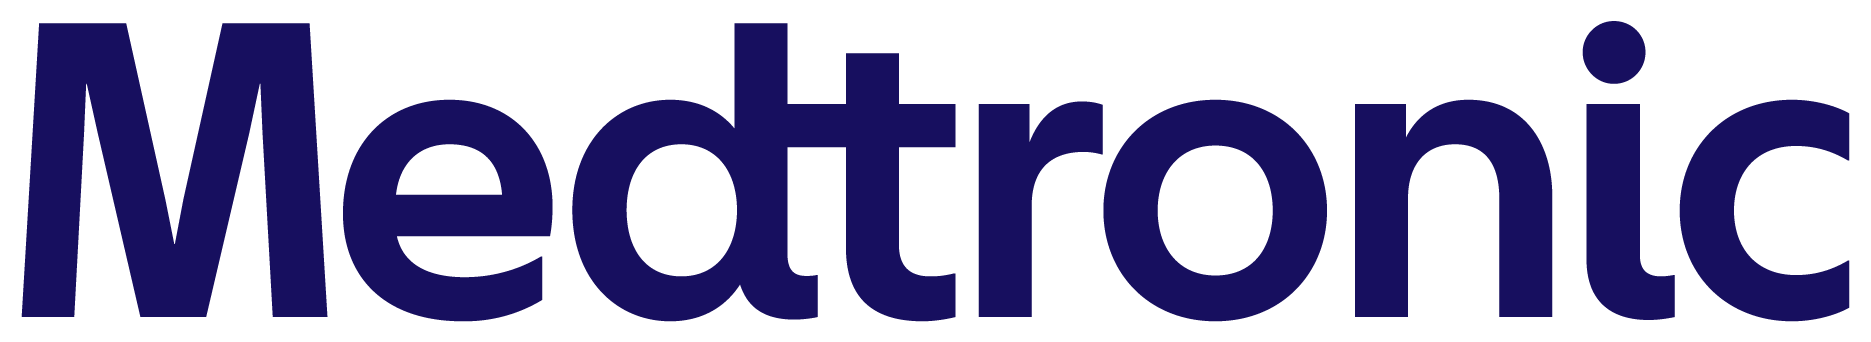 logo-medtronic